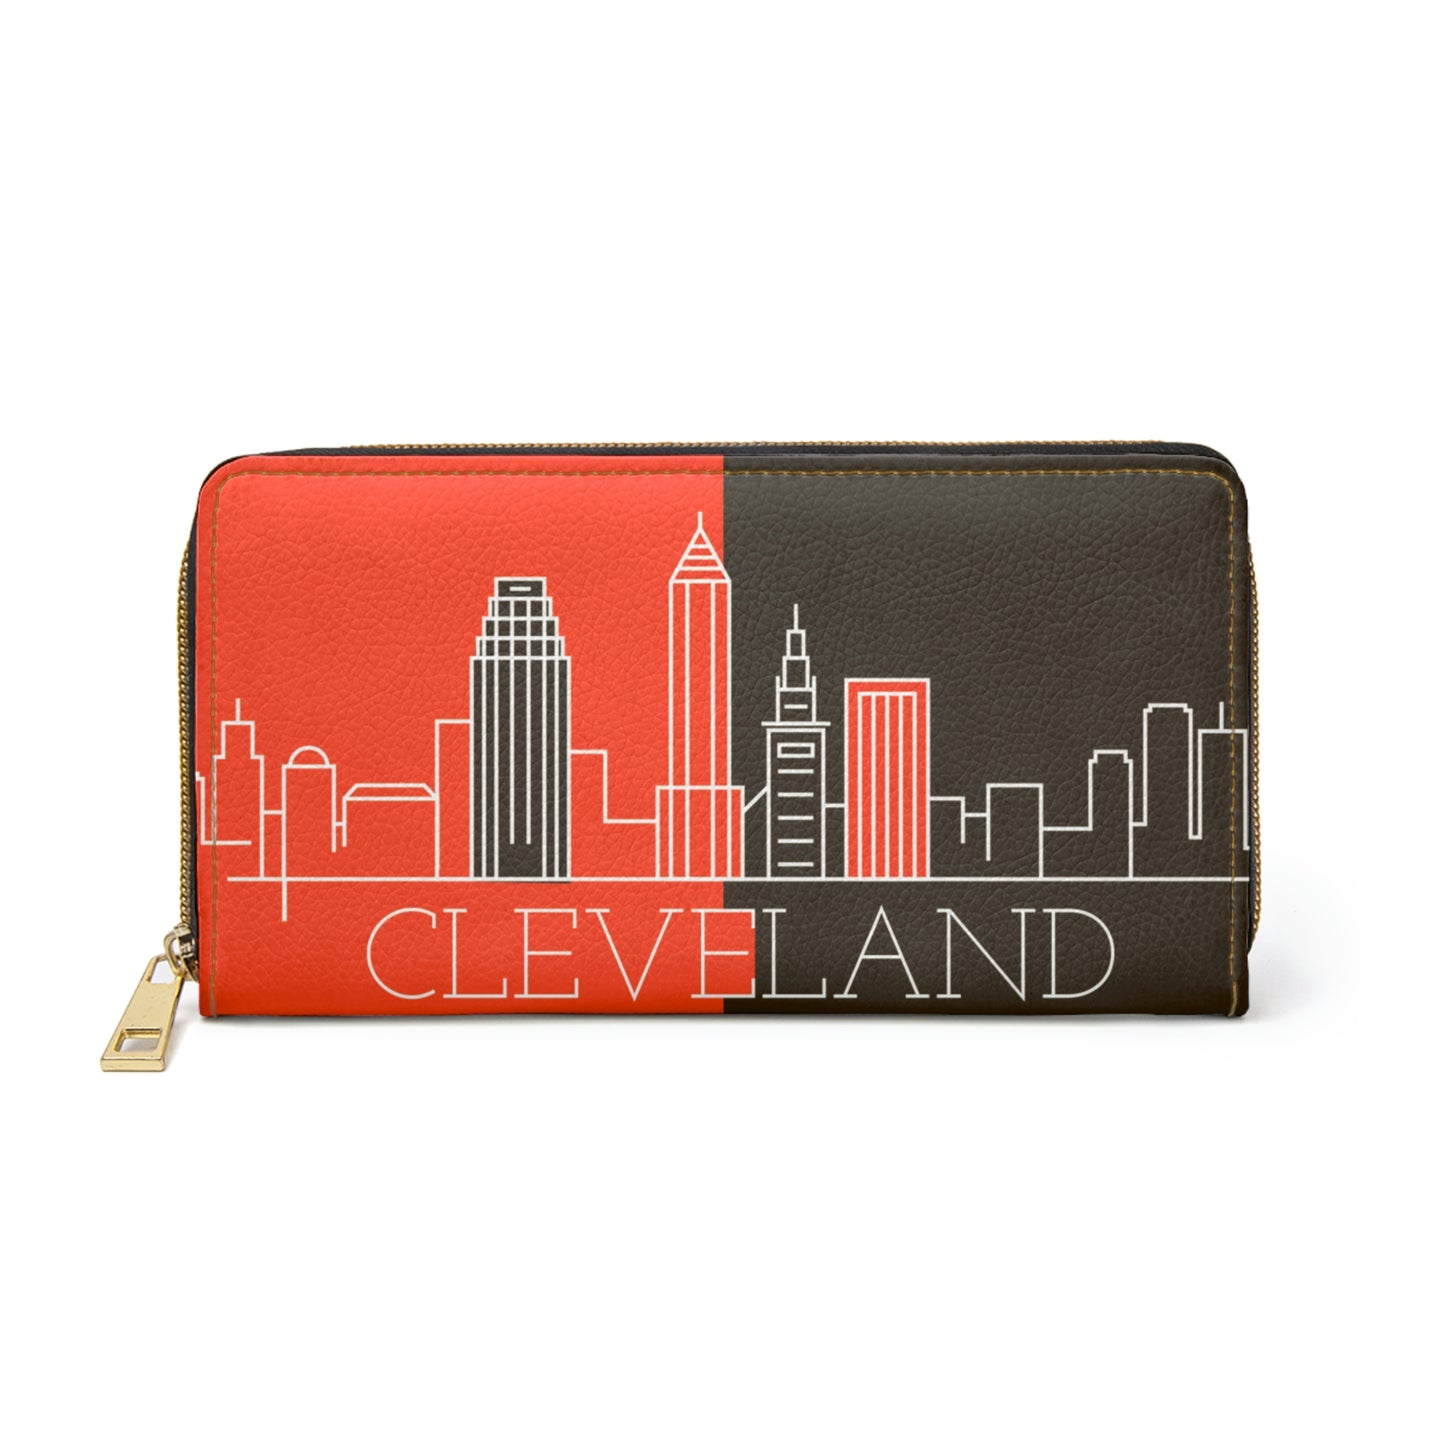 Cleveland - City series - Zipper Wallet